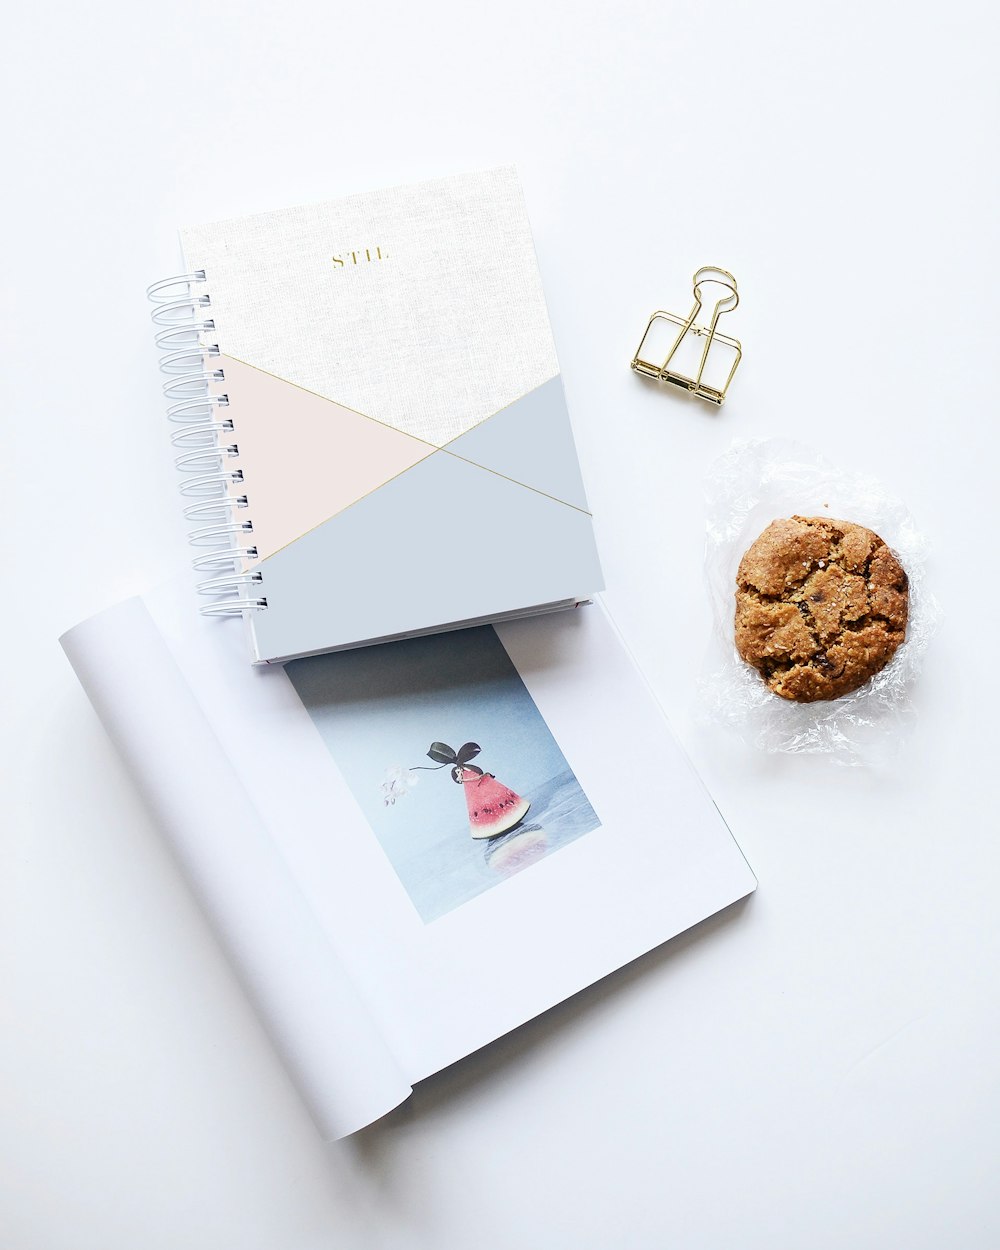 biscoito ao lado de dois cadernos na superfície branca